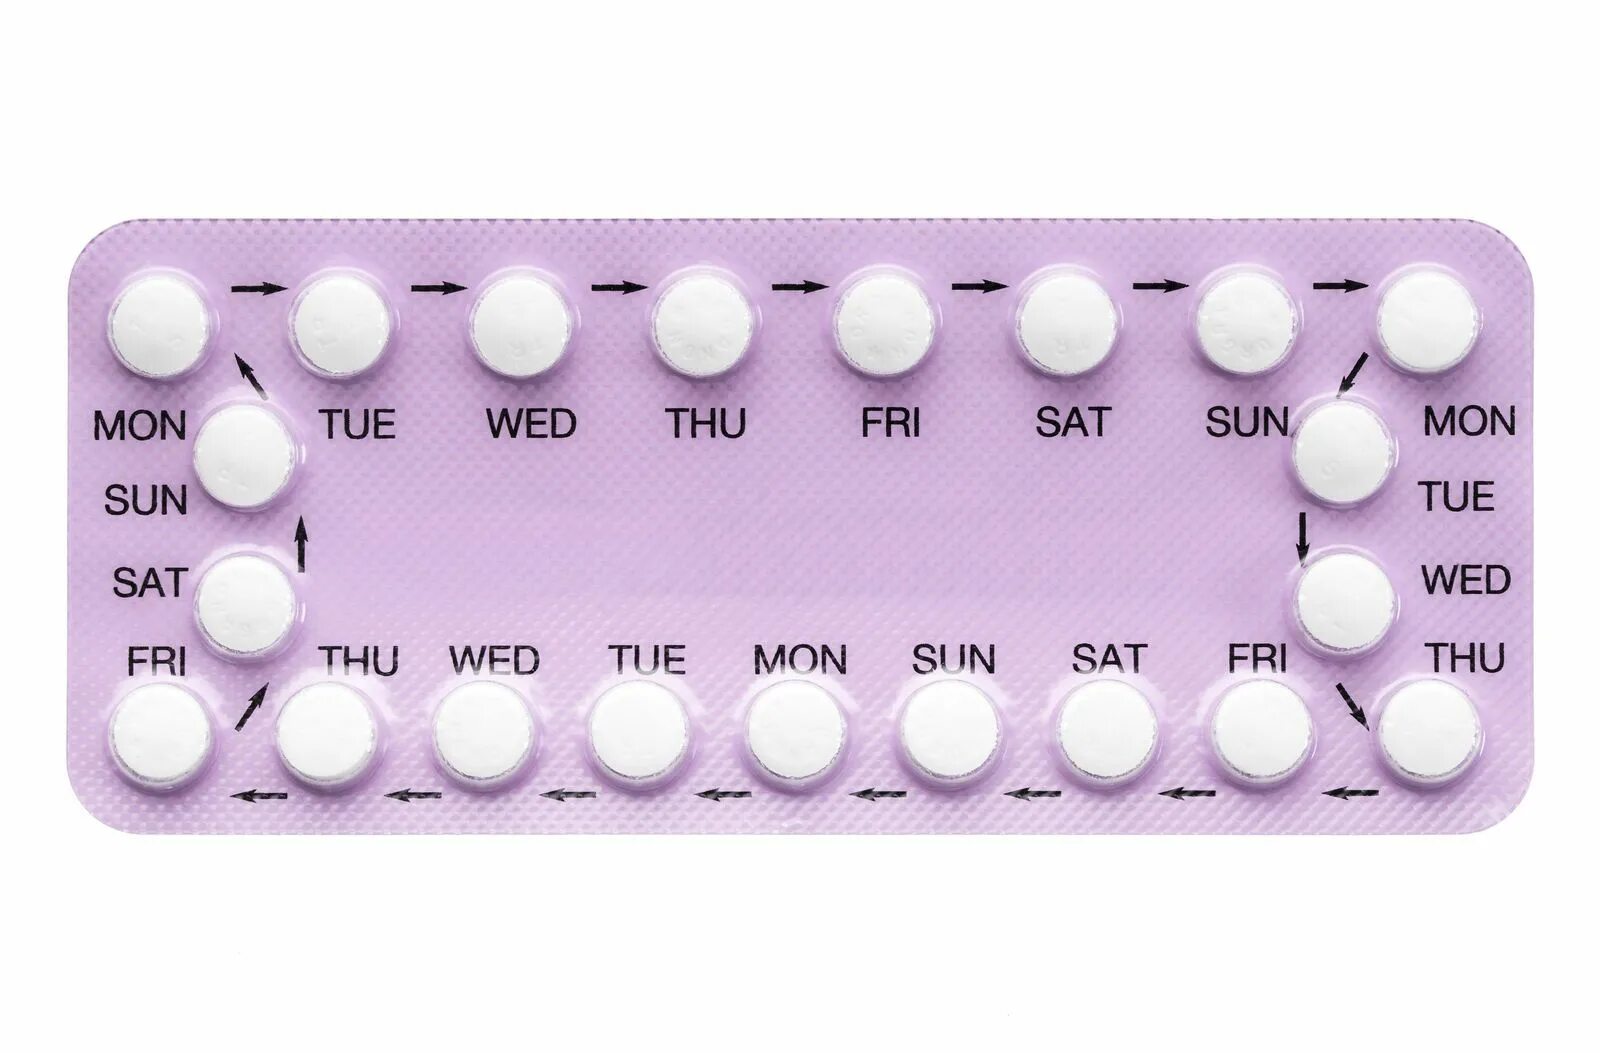 Противозачаточные оральные контрацептивы. Противозачаточные таблетки для женщин. Комбинированные оральные контрацептивы. Комбинированные противозачаточные препараты. Противозачаточные для мужчин название